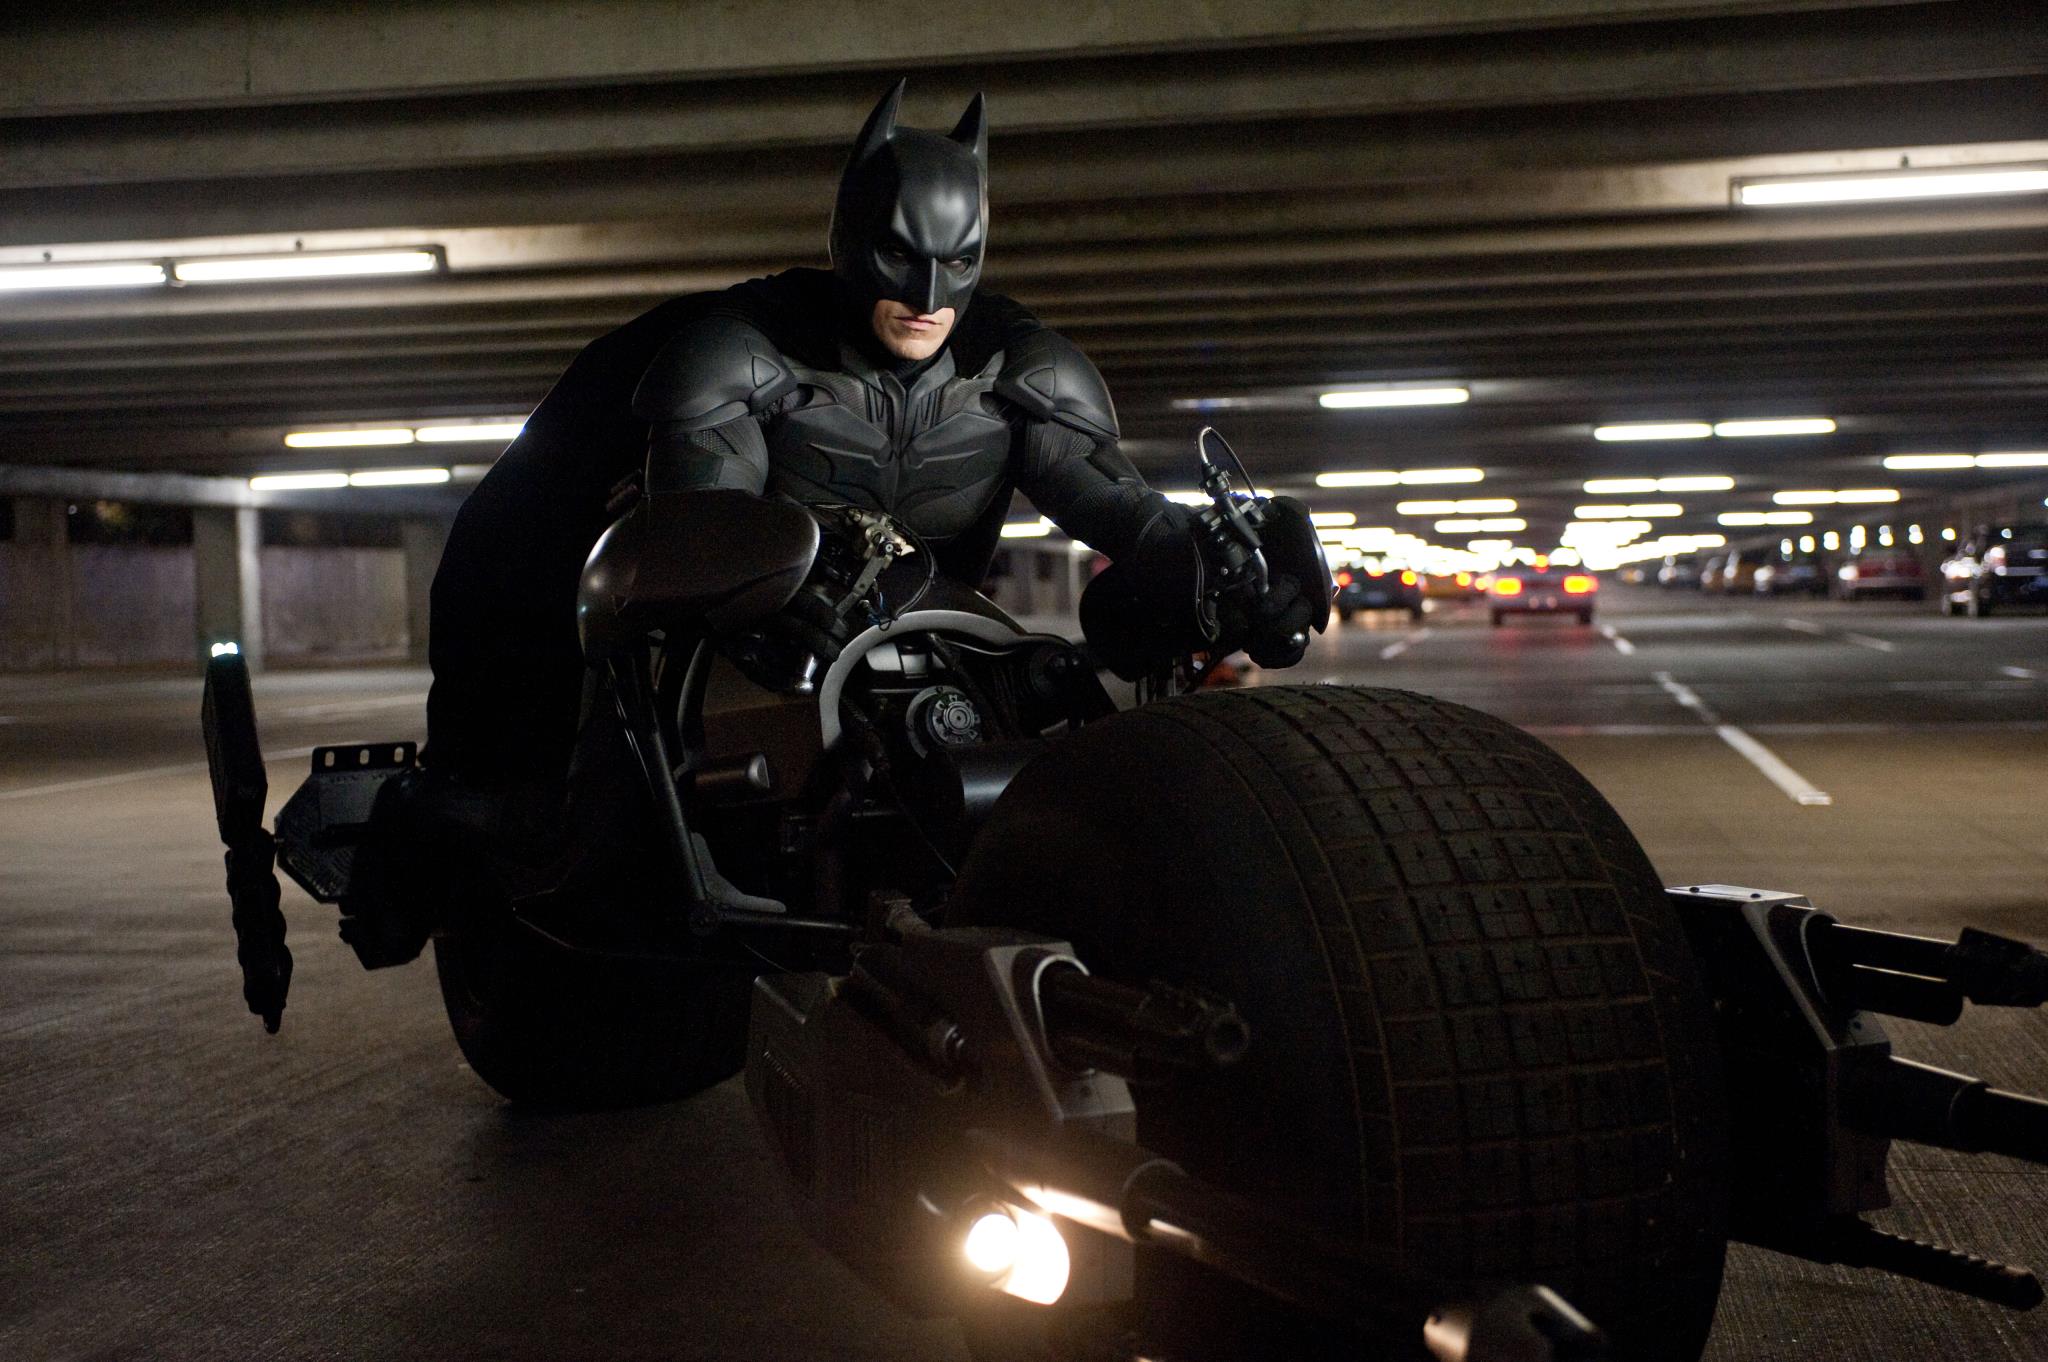 Imagen de la película Batman El Caballero Oscuro con su moto, la Batpod